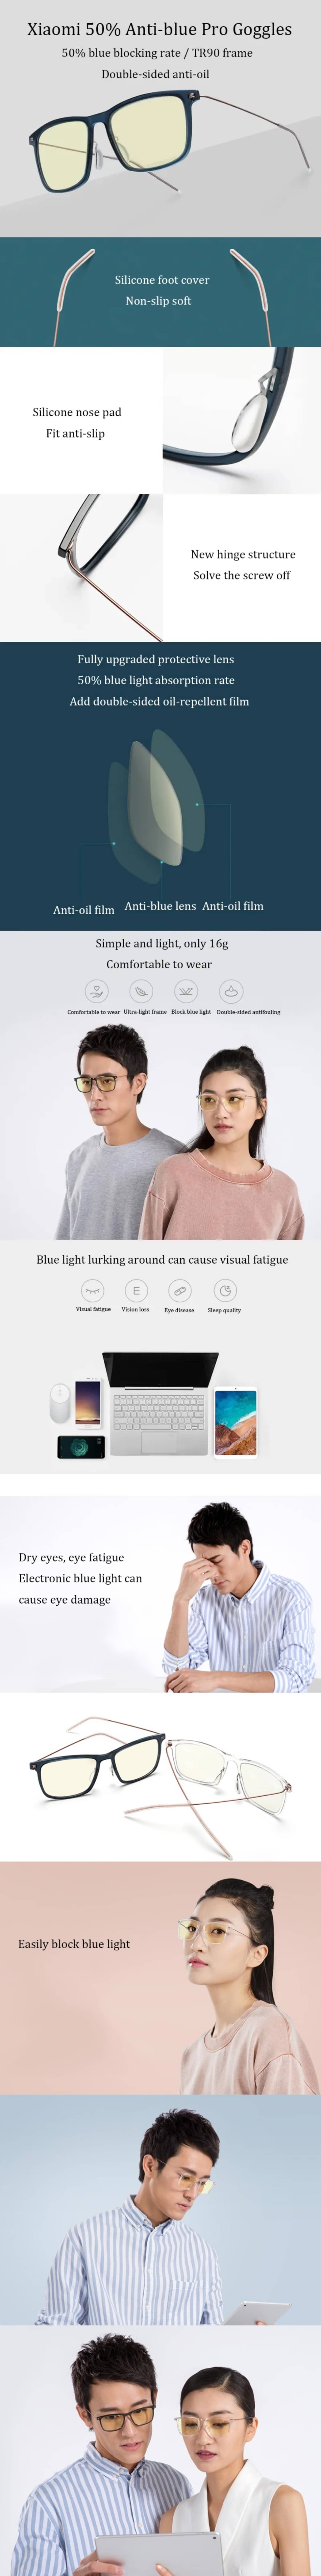 Xiaomi-Mi-Computer-Glasses-Pro5db0cf18bb7afb3e.jpg